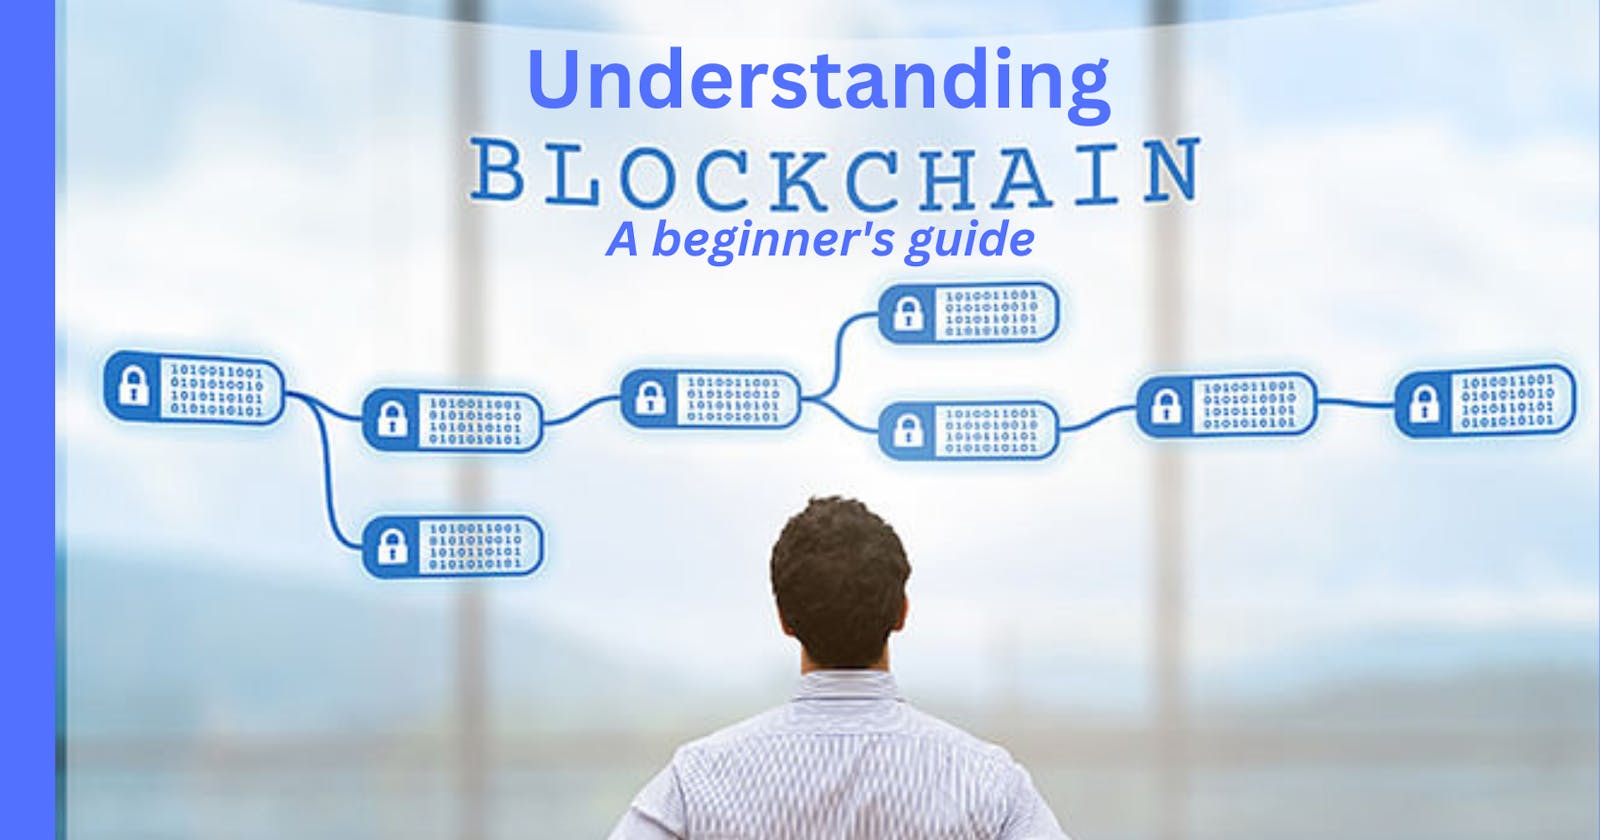 A beginner's guide to Understanding Blockchain technology